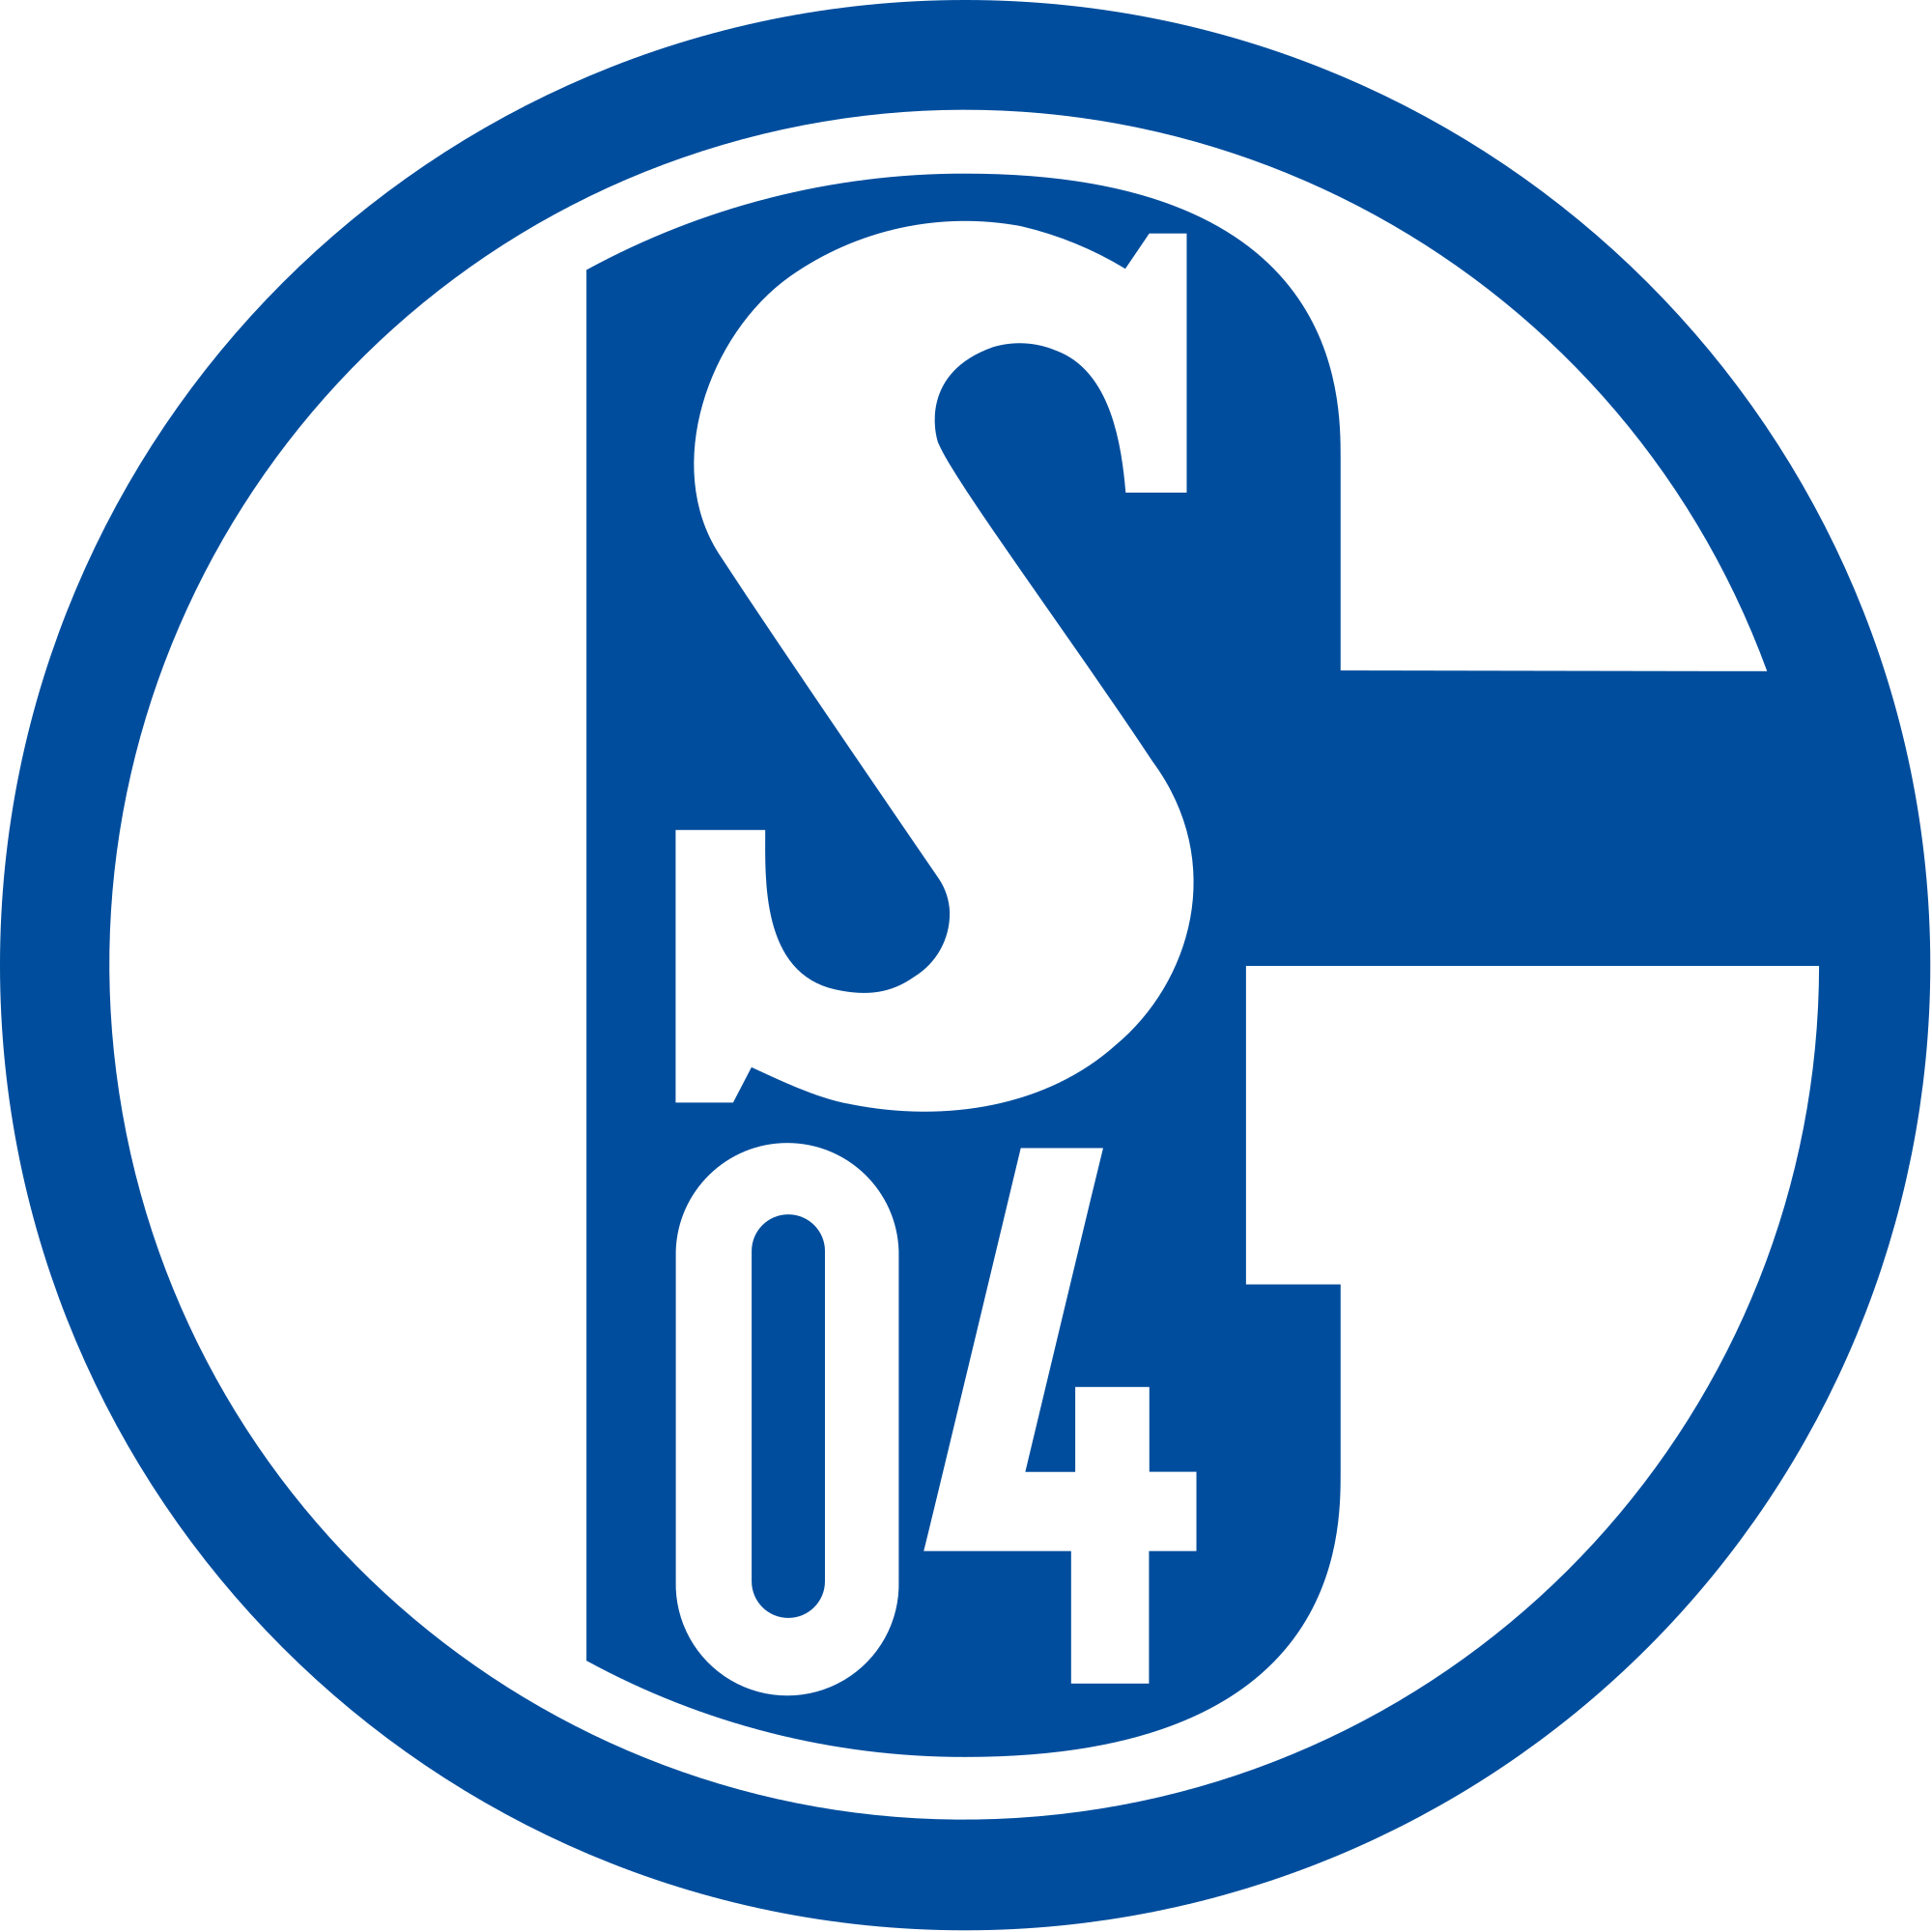 2000px-FC Schalke 04 Logo.svg